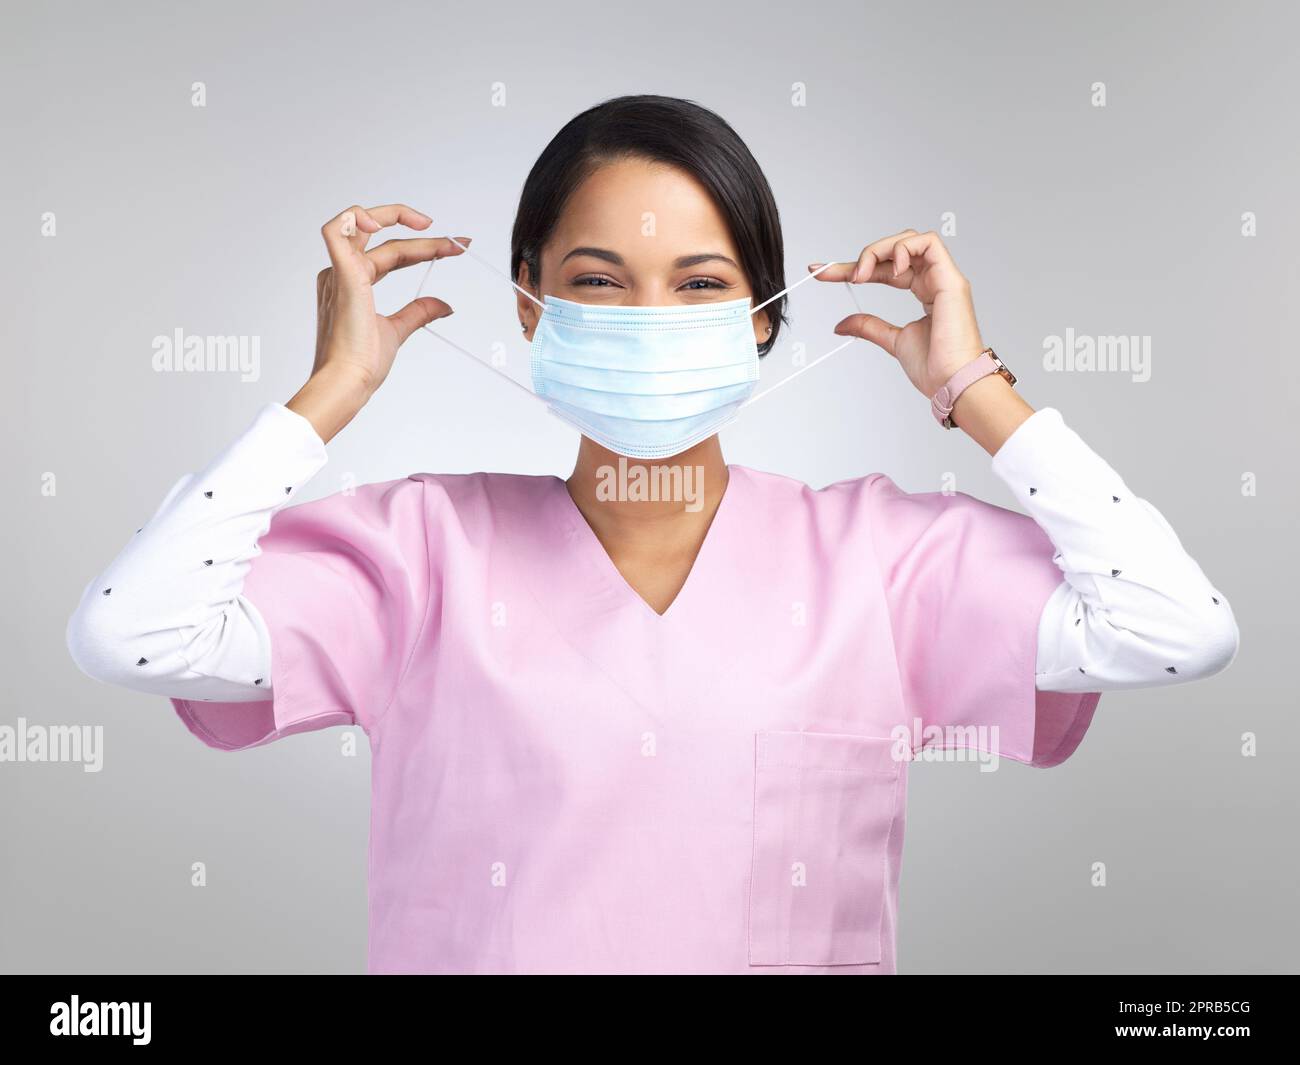 Non me ne vado mai di casa senza. Ritratto ritagliato di una giovane attraente lavoratrice sanitaria che indossa una maschera e sta in piedi in studio su uno sfondo grigio. Foto Stock